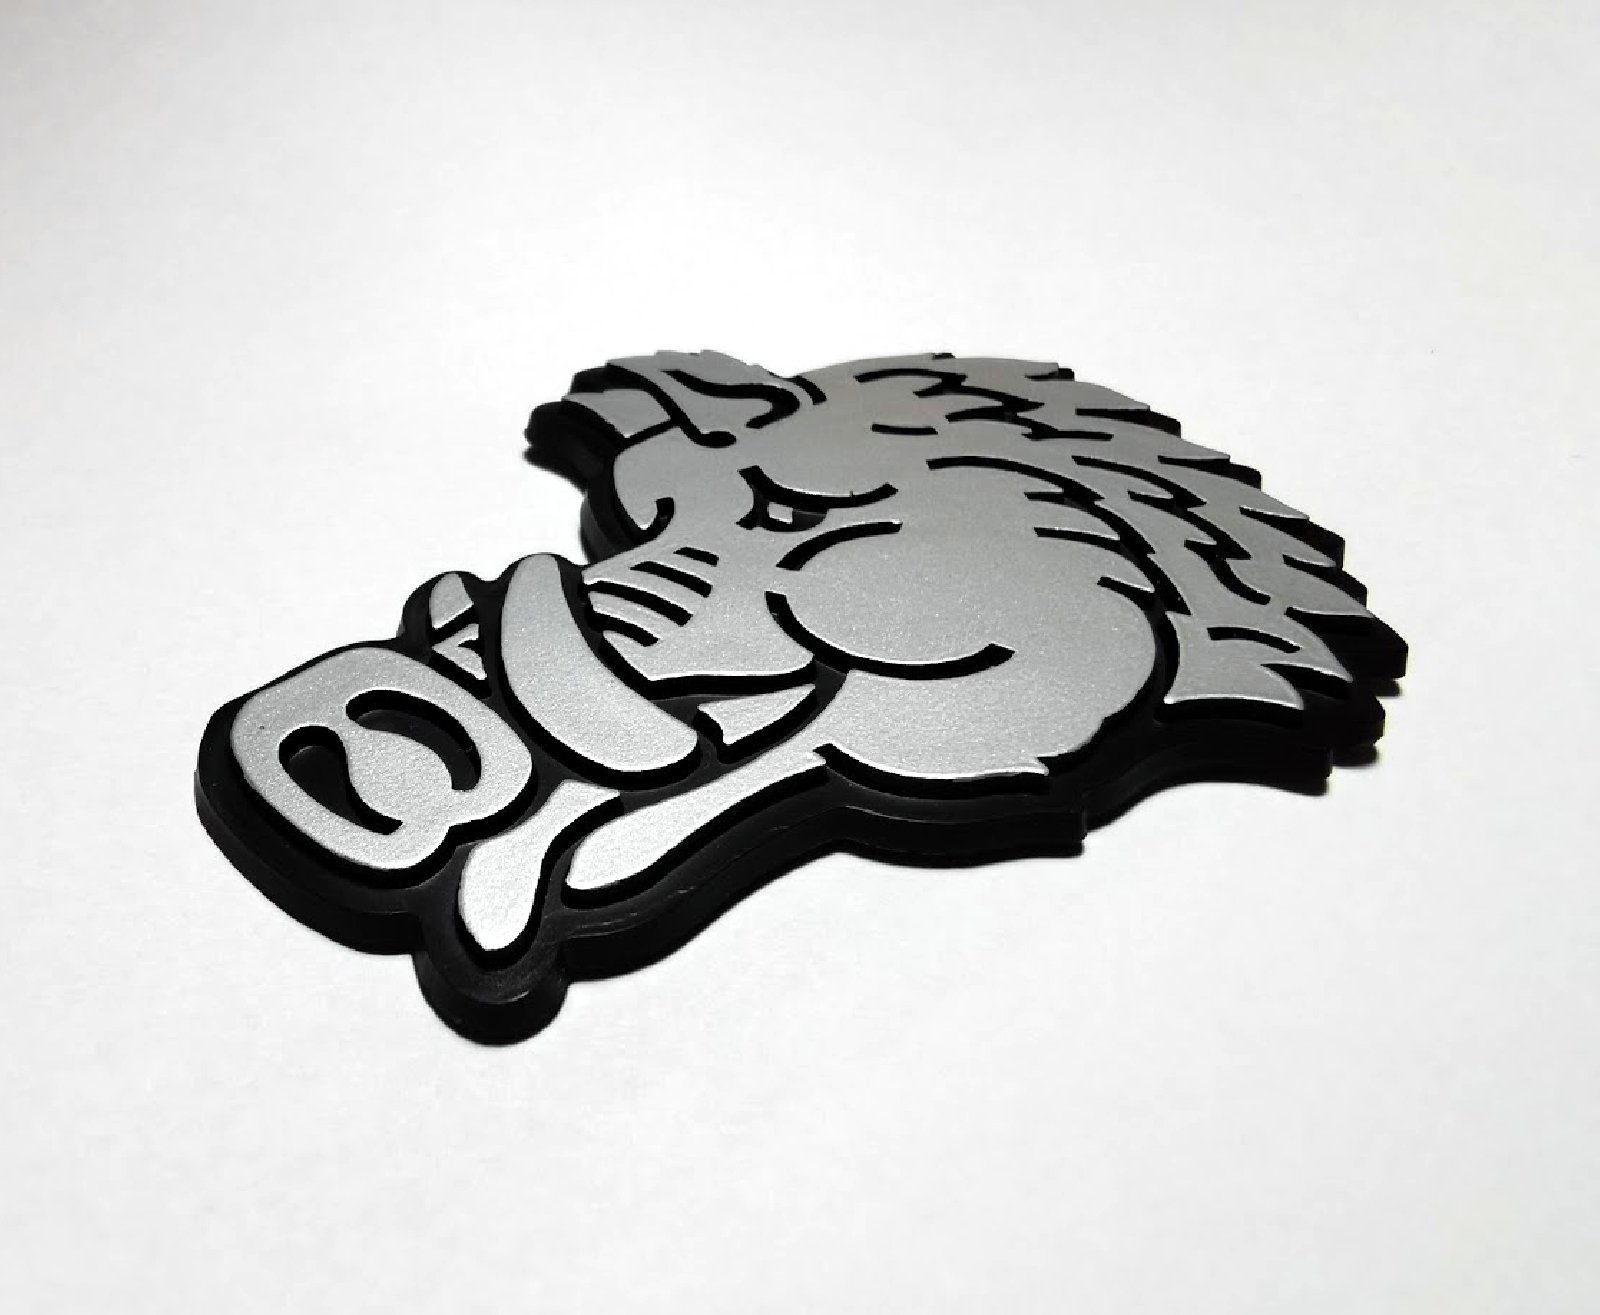 Sau Wildschwein Keiler Eber Relief Emblem 3D Schild 8 x 6 cm selbstklebend grau 